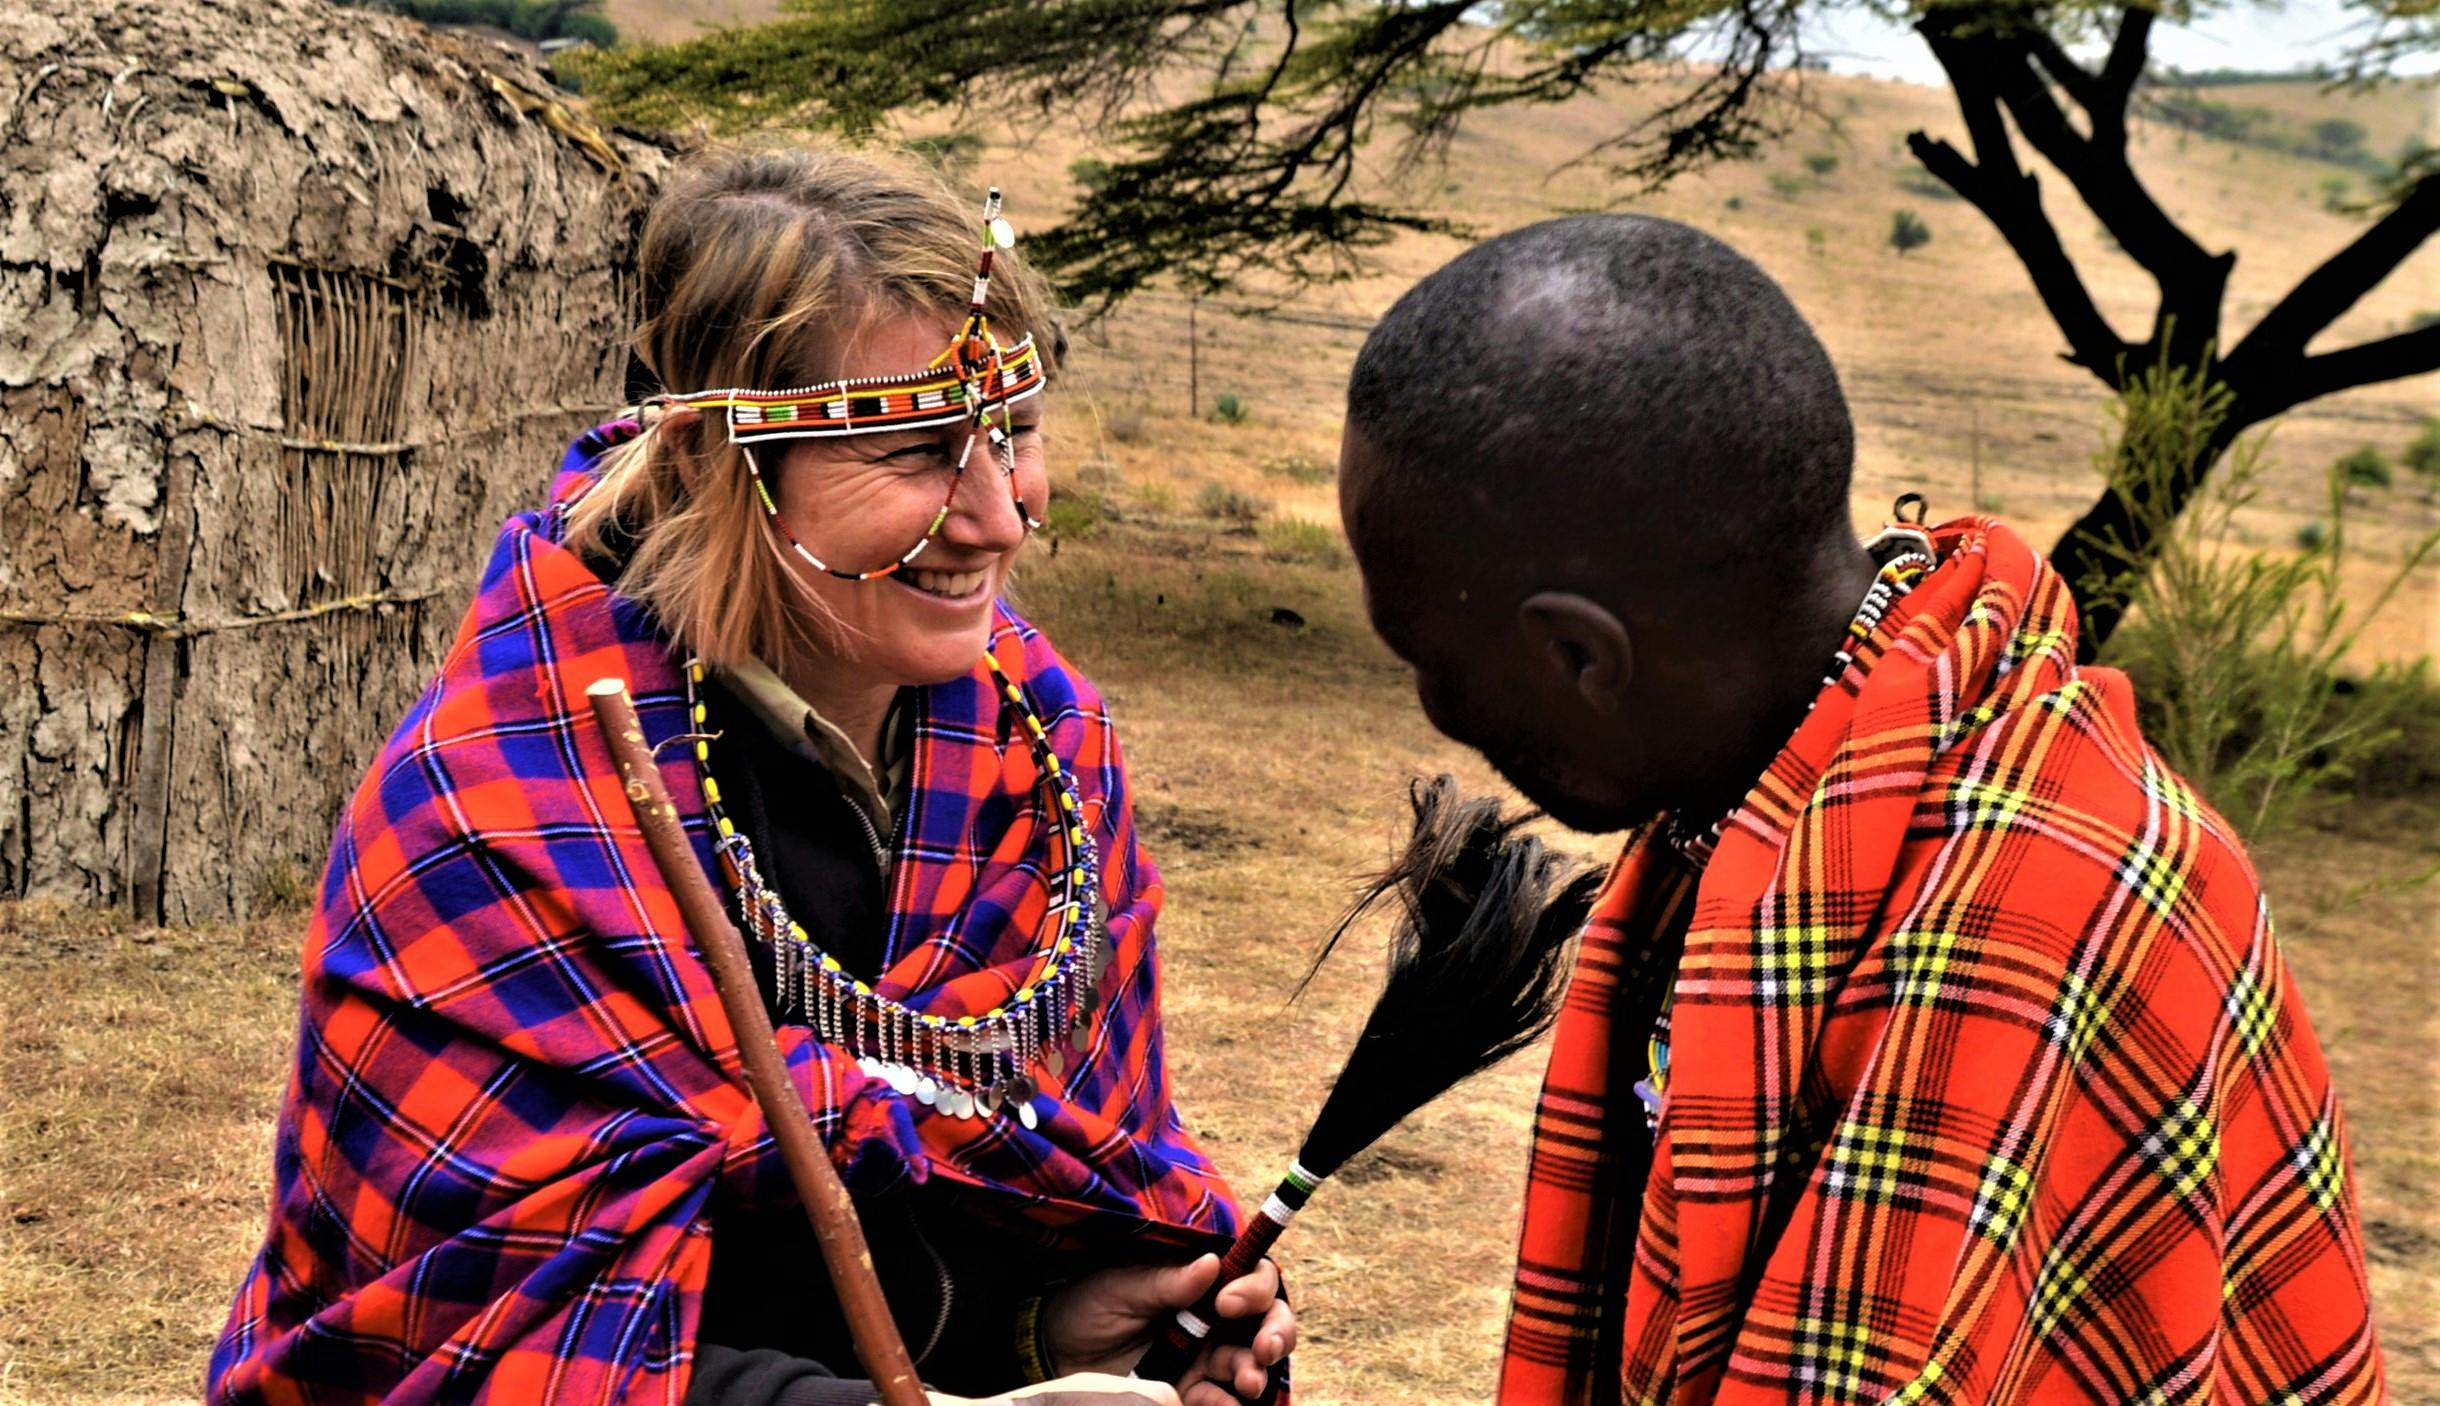 Kenijska wioska Massai i życie plemienne 2-dniowa wycieczka z Nairobi